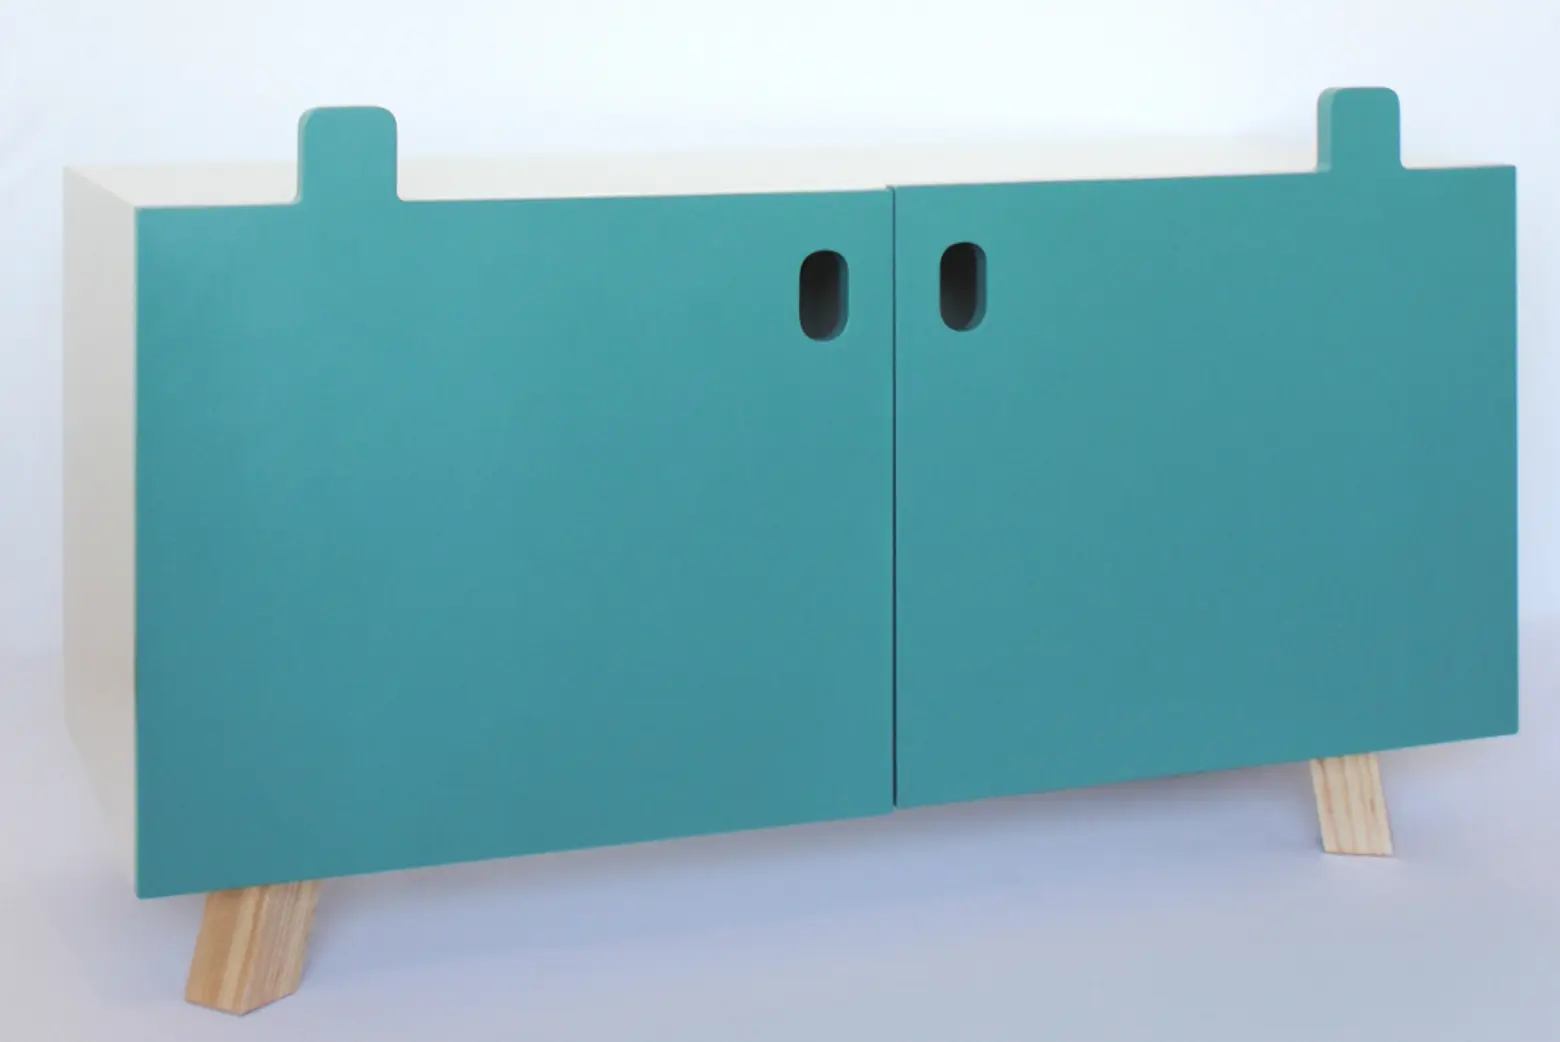 Mostros dresser designed by Oscar Nunez